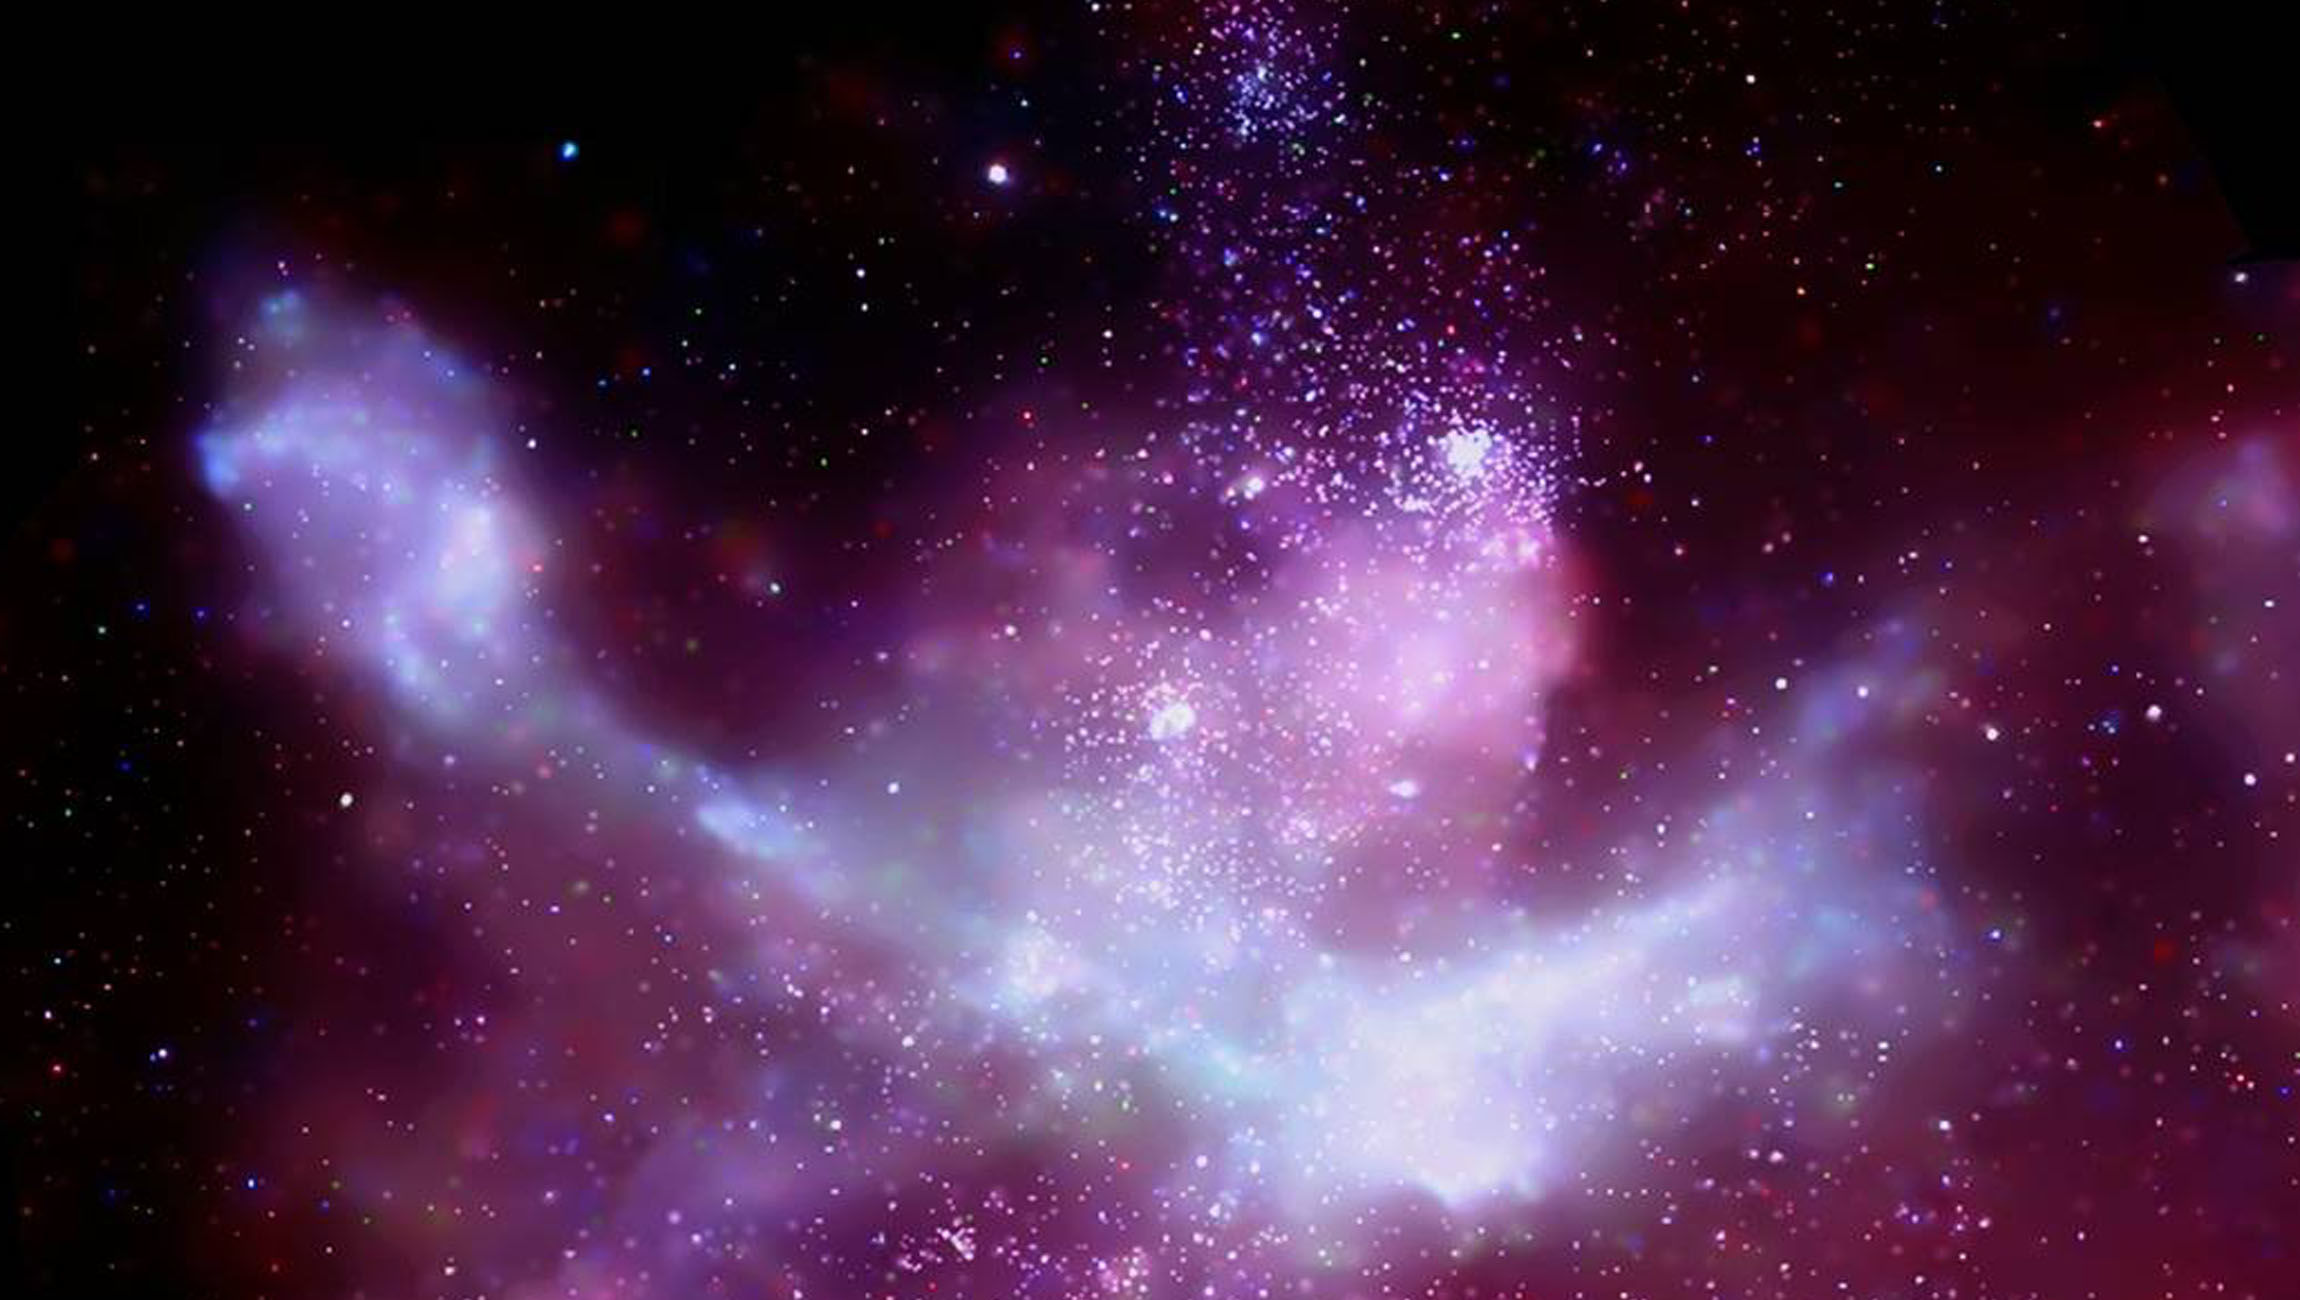 NASA image of a nebula